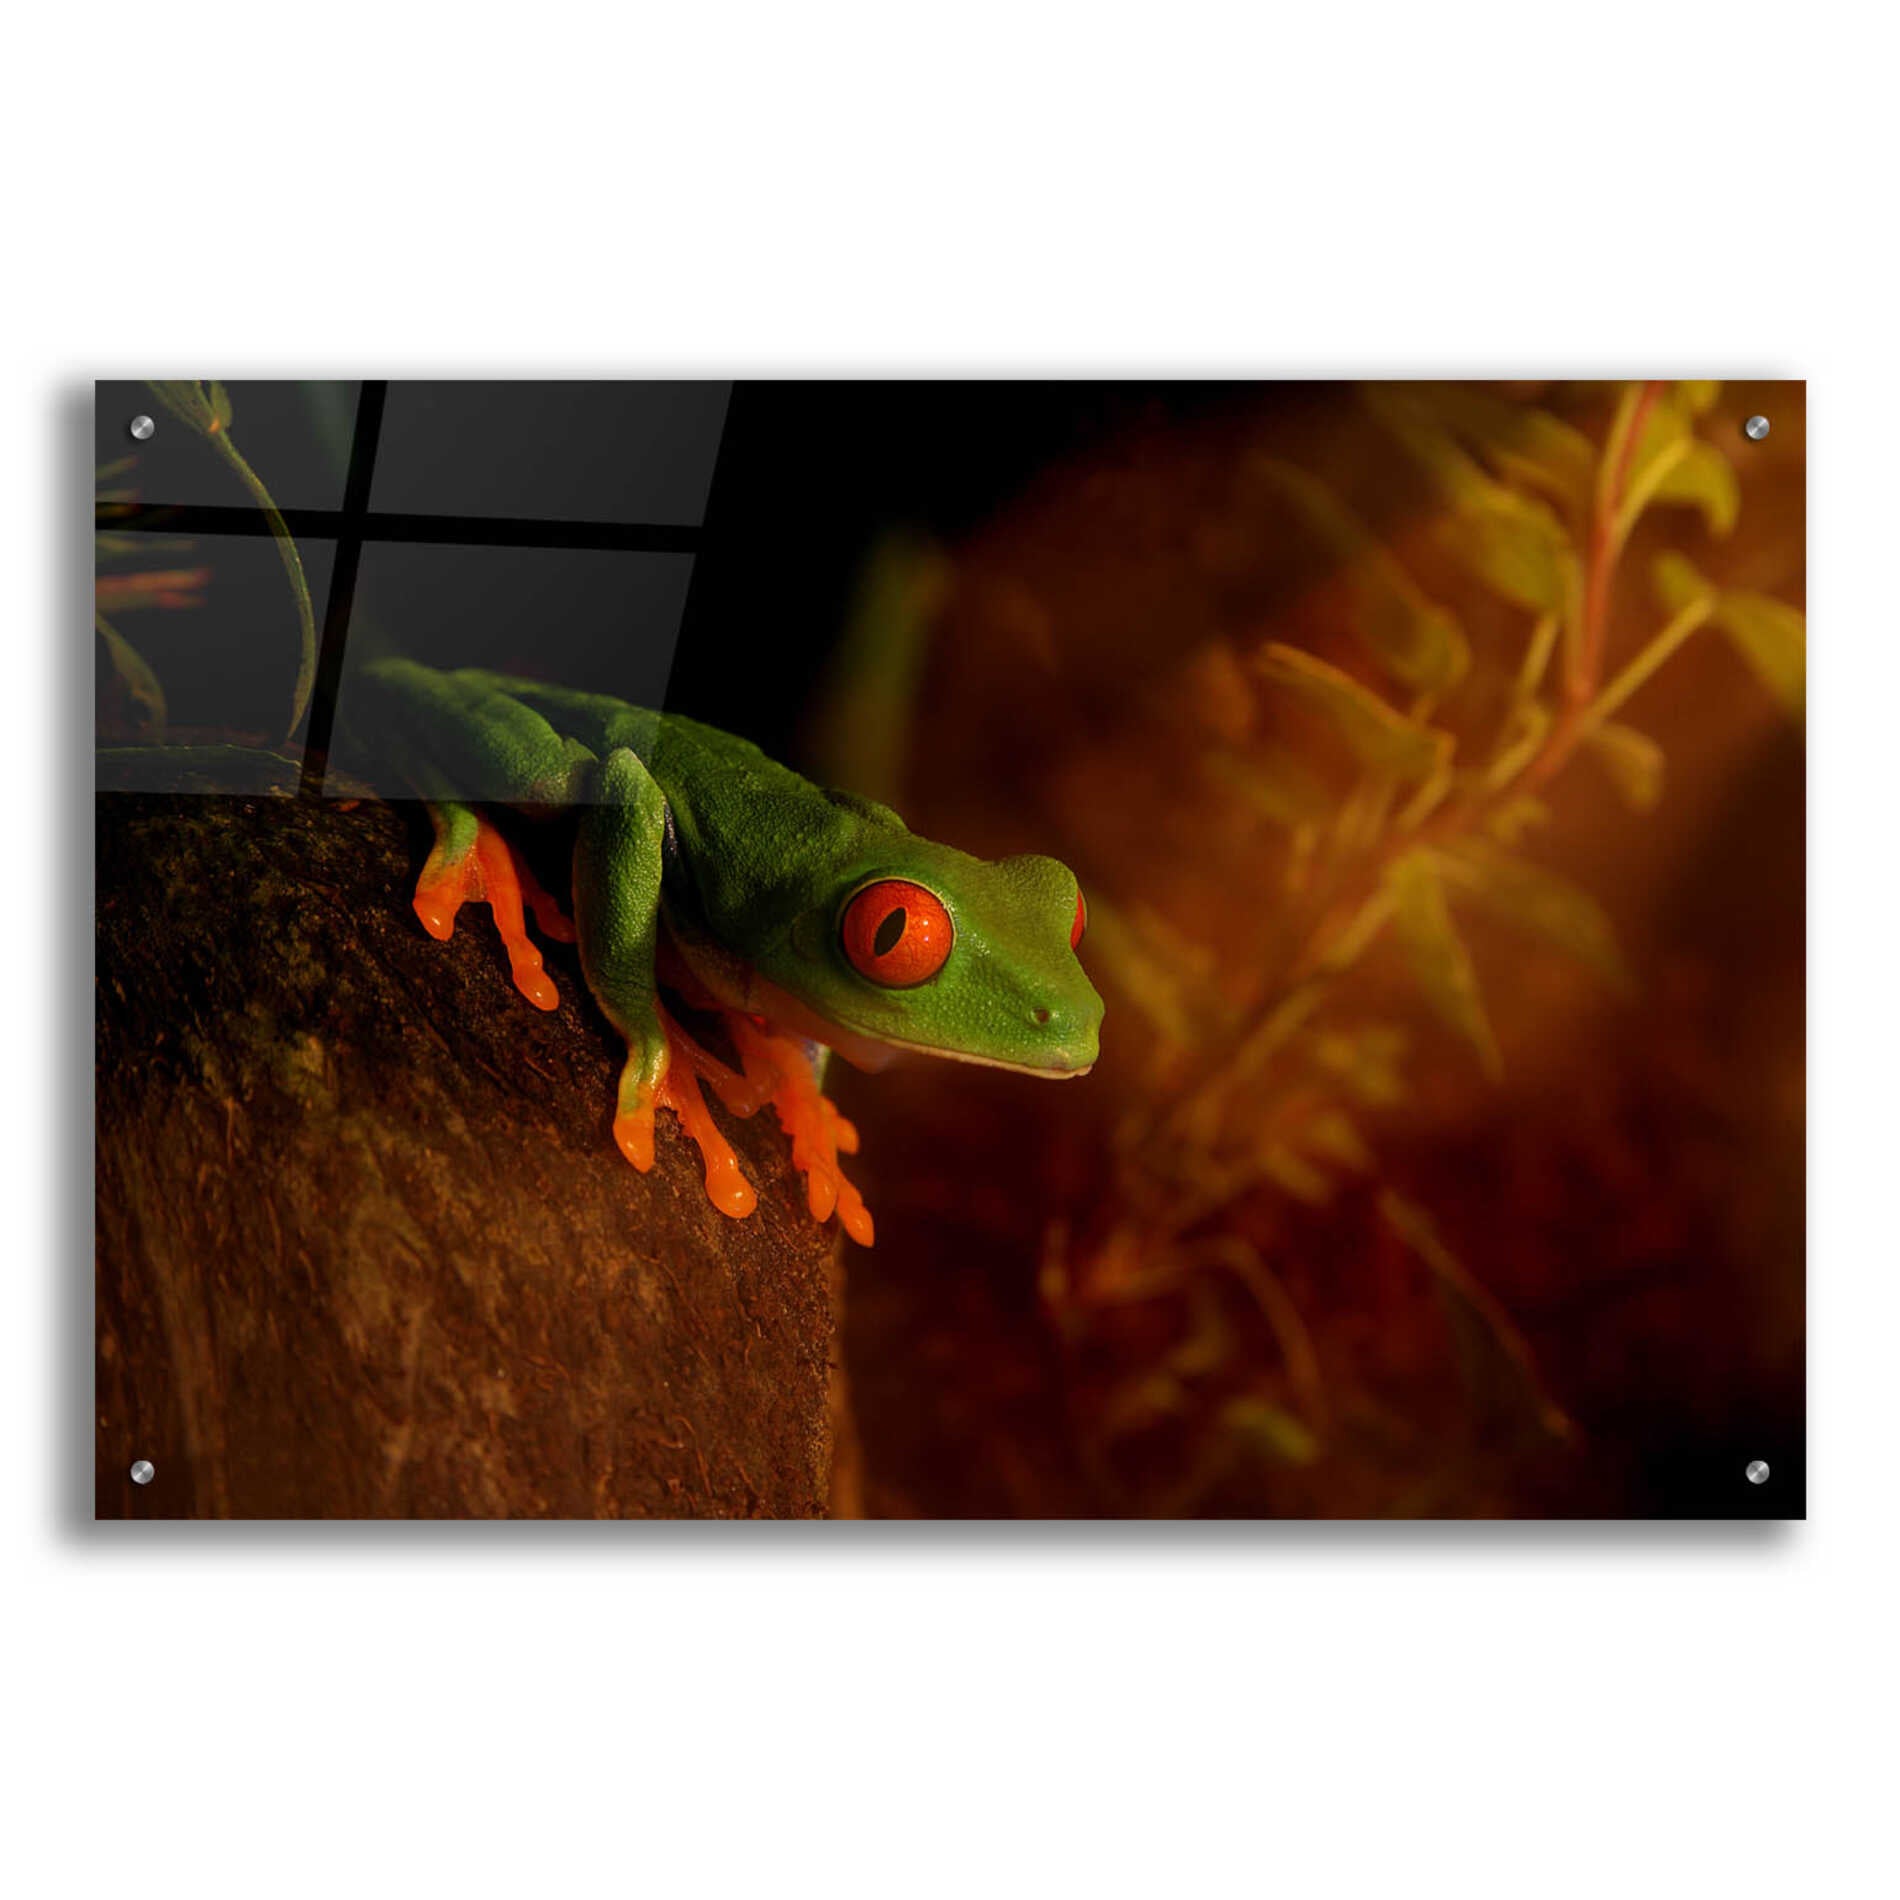 Epic Art 'Froggy' by Epic Portfolio Acrylic Glass Wall Art,36x24